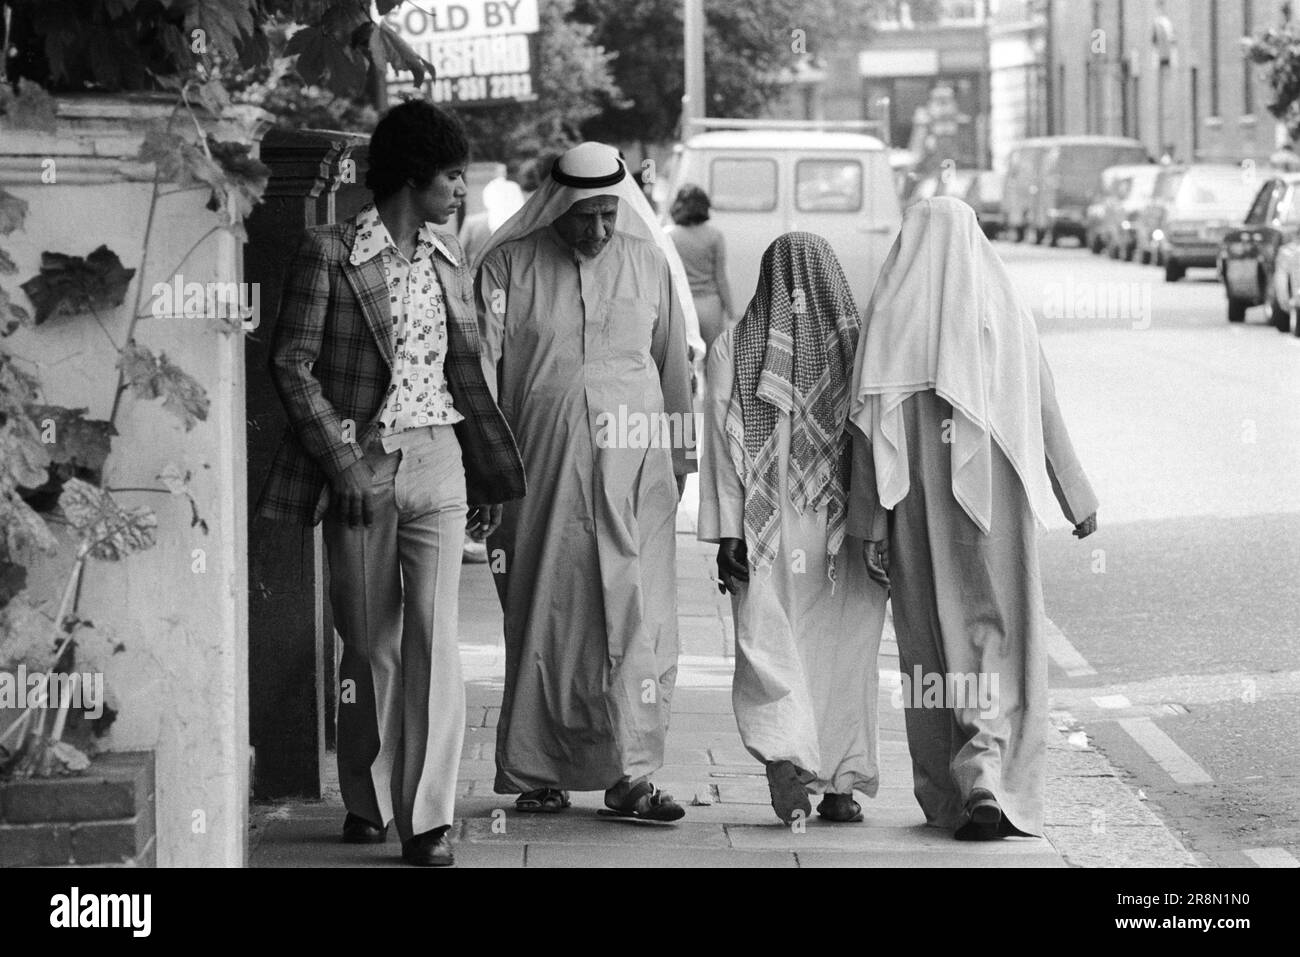 Des hommes arabes pauvres marchent dans la rue d'Earls court Londres 1970s Royaume-Uni. Les habitants du Moyen-Orient sont venus en Grande-Bretagne pour des soins de santé subventionnés dans les cliniques de Harley Street. Ils ont surtout séjourné dans le quartier d'Earls court. Quatre hommes, un jeune homme vêtu de l'Ouest et les trois autres hommes portant les robes blanches traditionnelles appelées un thoub, thobe, dishdasha ou kandora et la coiffure arabe traditionnelle appelée kaffiyeh ou ghutra. Earls court, Londres, Angleterre vers 1977 70s UK HOMER SYKES Banque D'Images